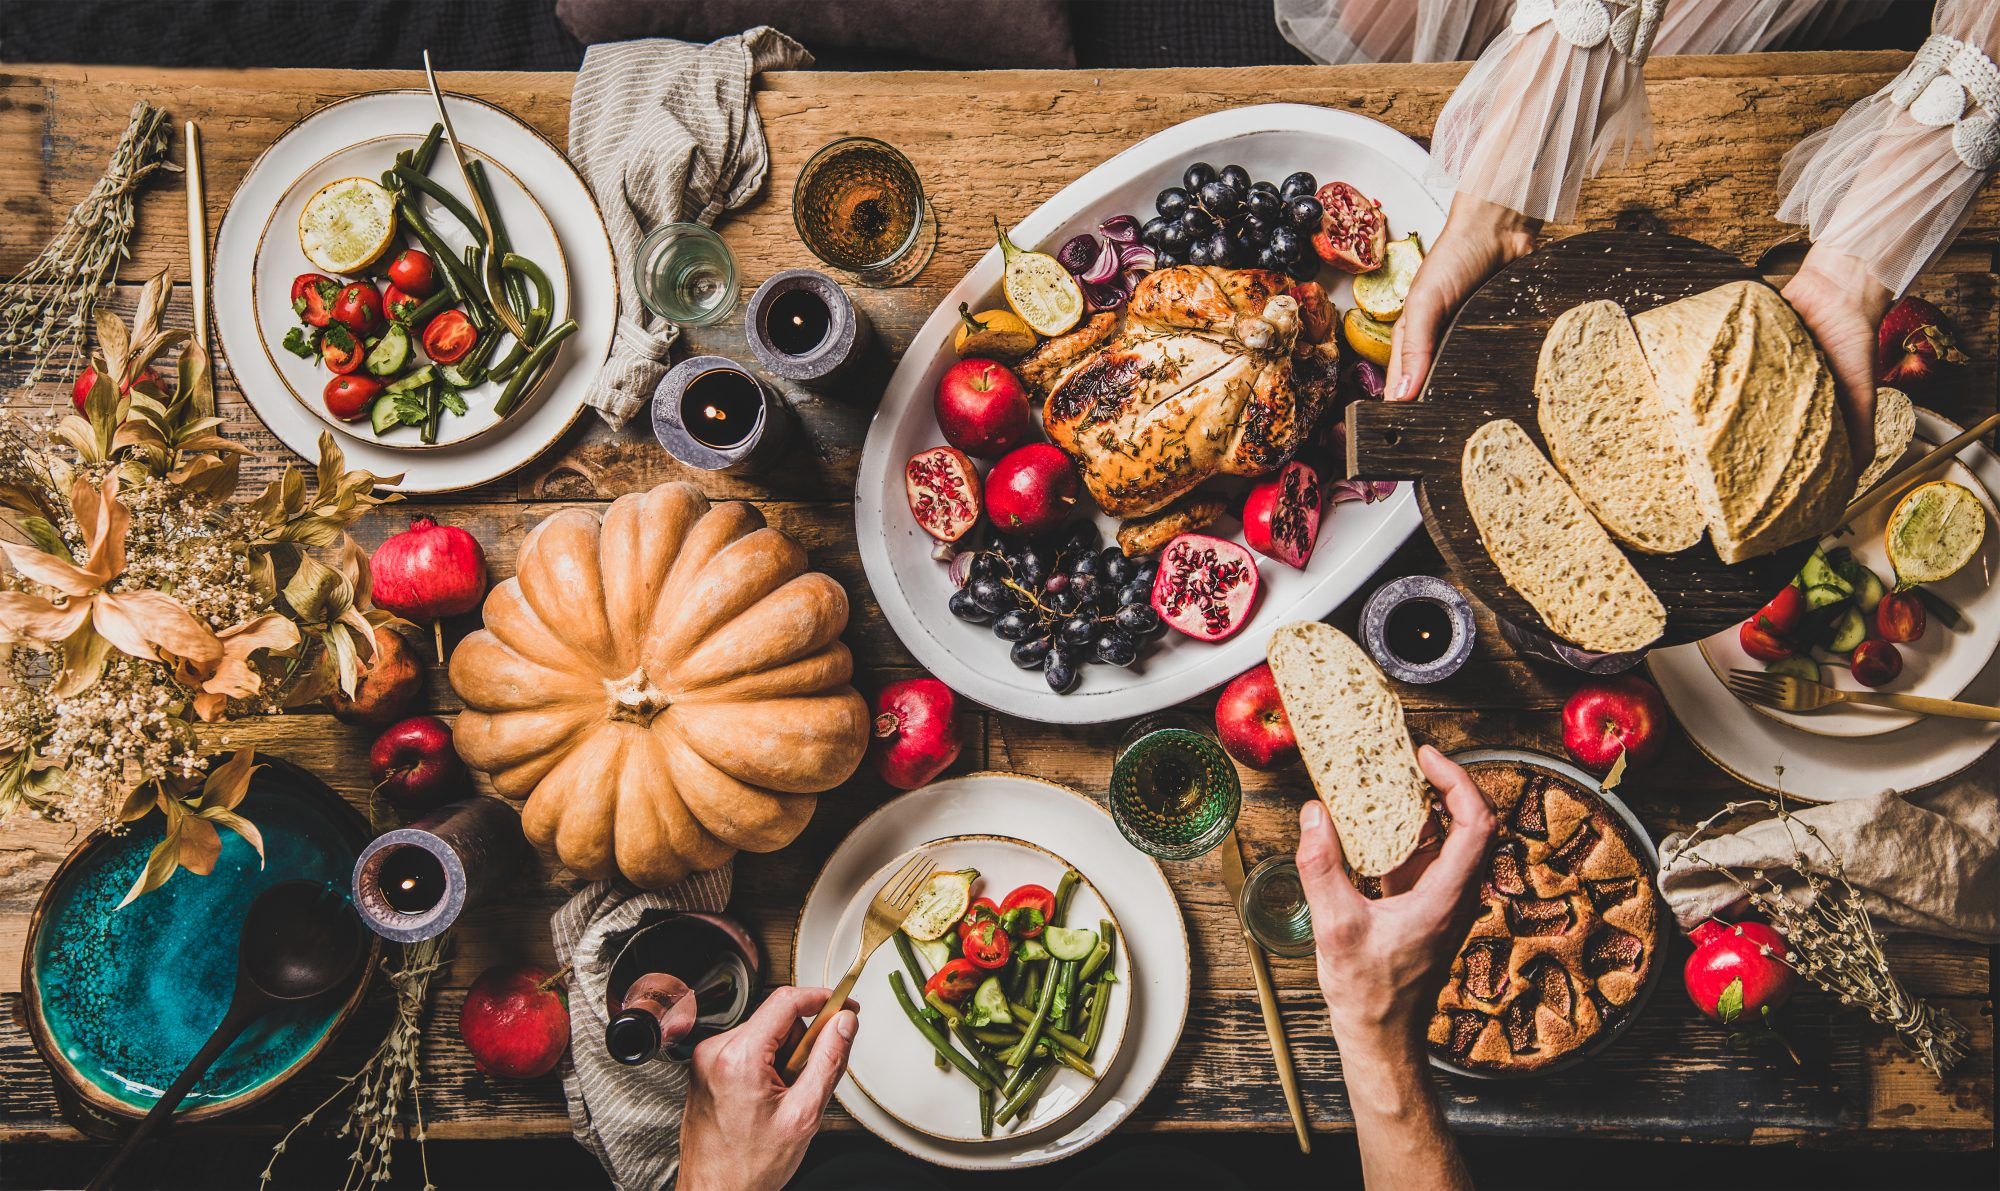 Ακολουθήστε αυτά τα 6 απλά βήματα για να φιλοξενήσετε την Ημέρα των Ευχαριστιών για δύο που θα αισθάνονται εξίσου εορταστικά (και νόστιμα) όσο ποτέ